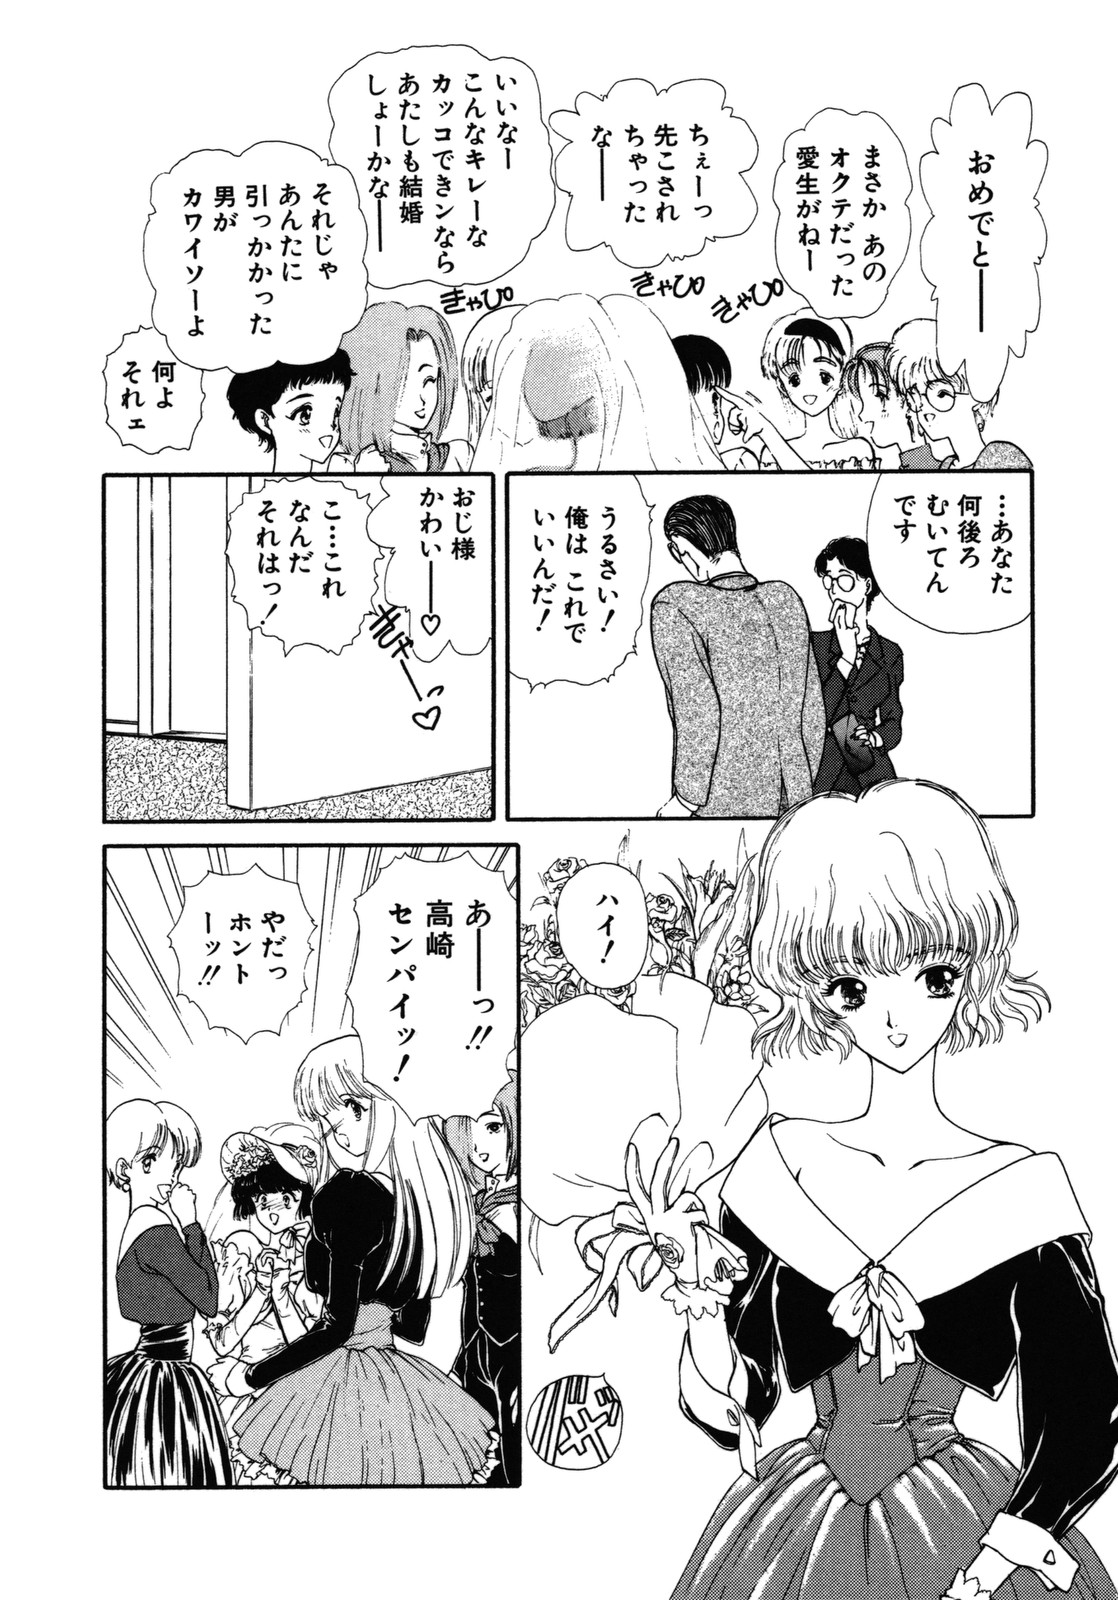 [Utatane Hiroyuki] COUNT DOWN page 13 full